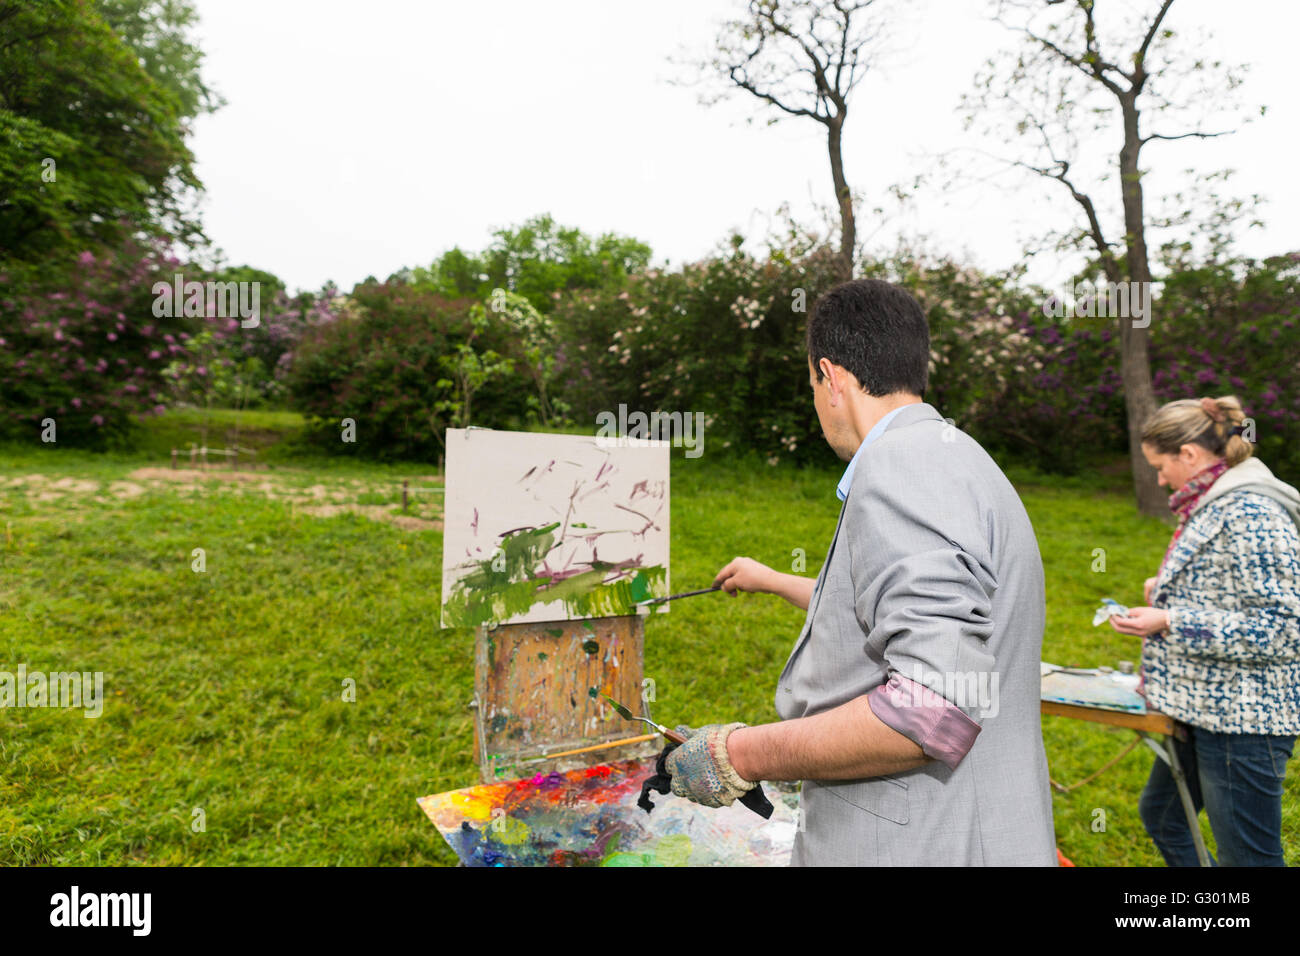 Middle-aged male et femelle peintres debout devant leur croquis photos peinture à l'huile et acrylique peinture durant une classe d'art dans un parc. Banque D'Images